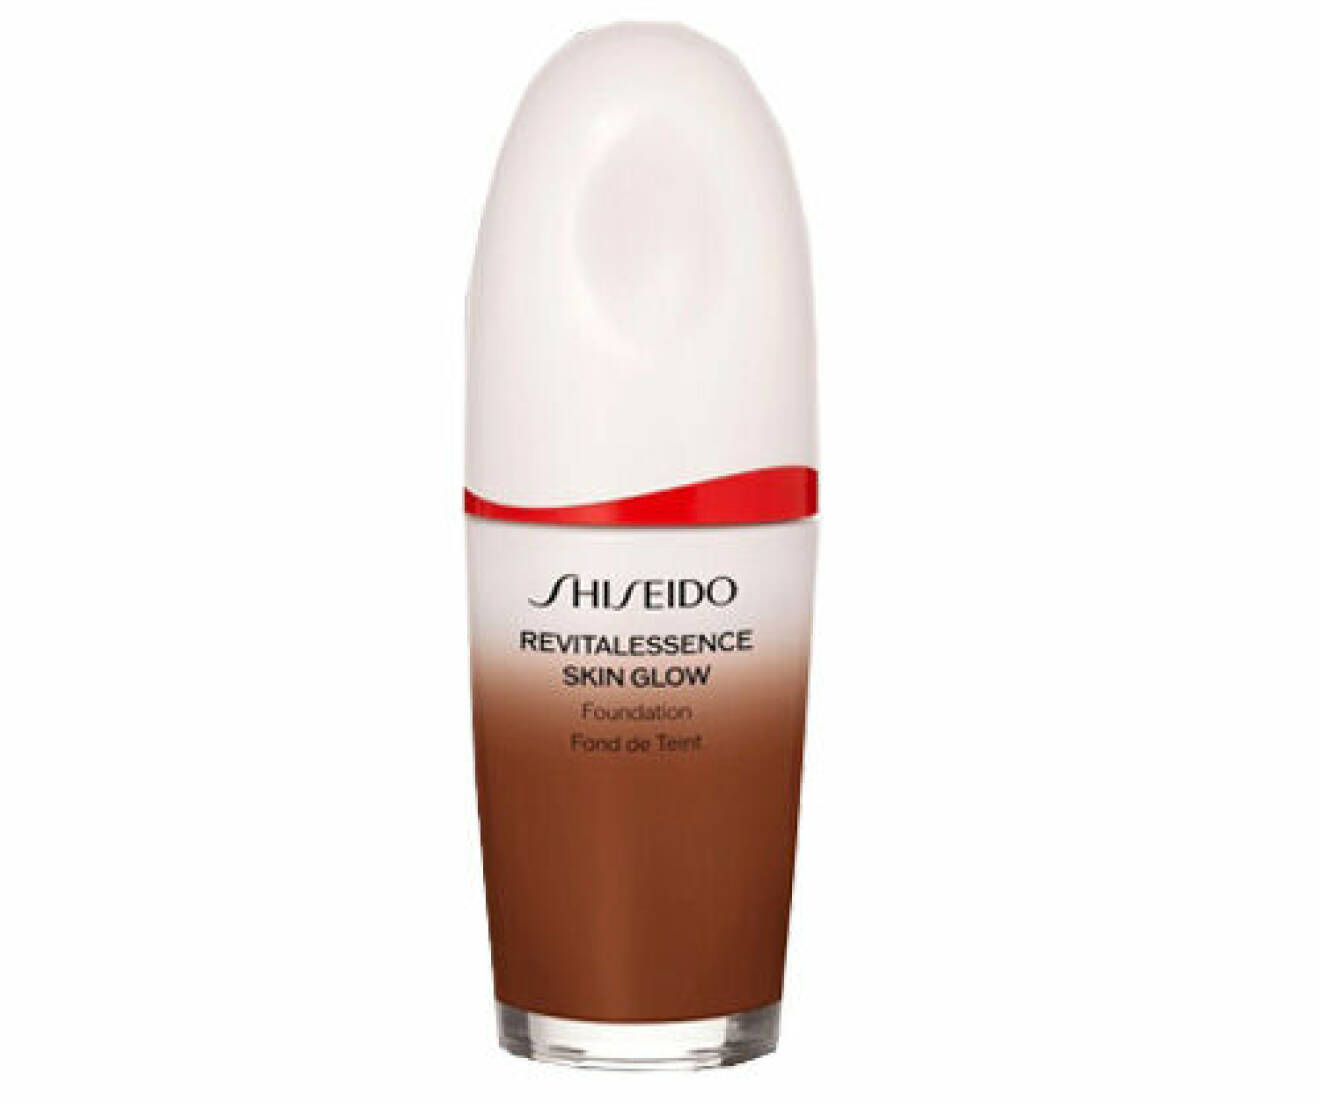 Revitalessence Skin Glow SPF 30, Shiseido